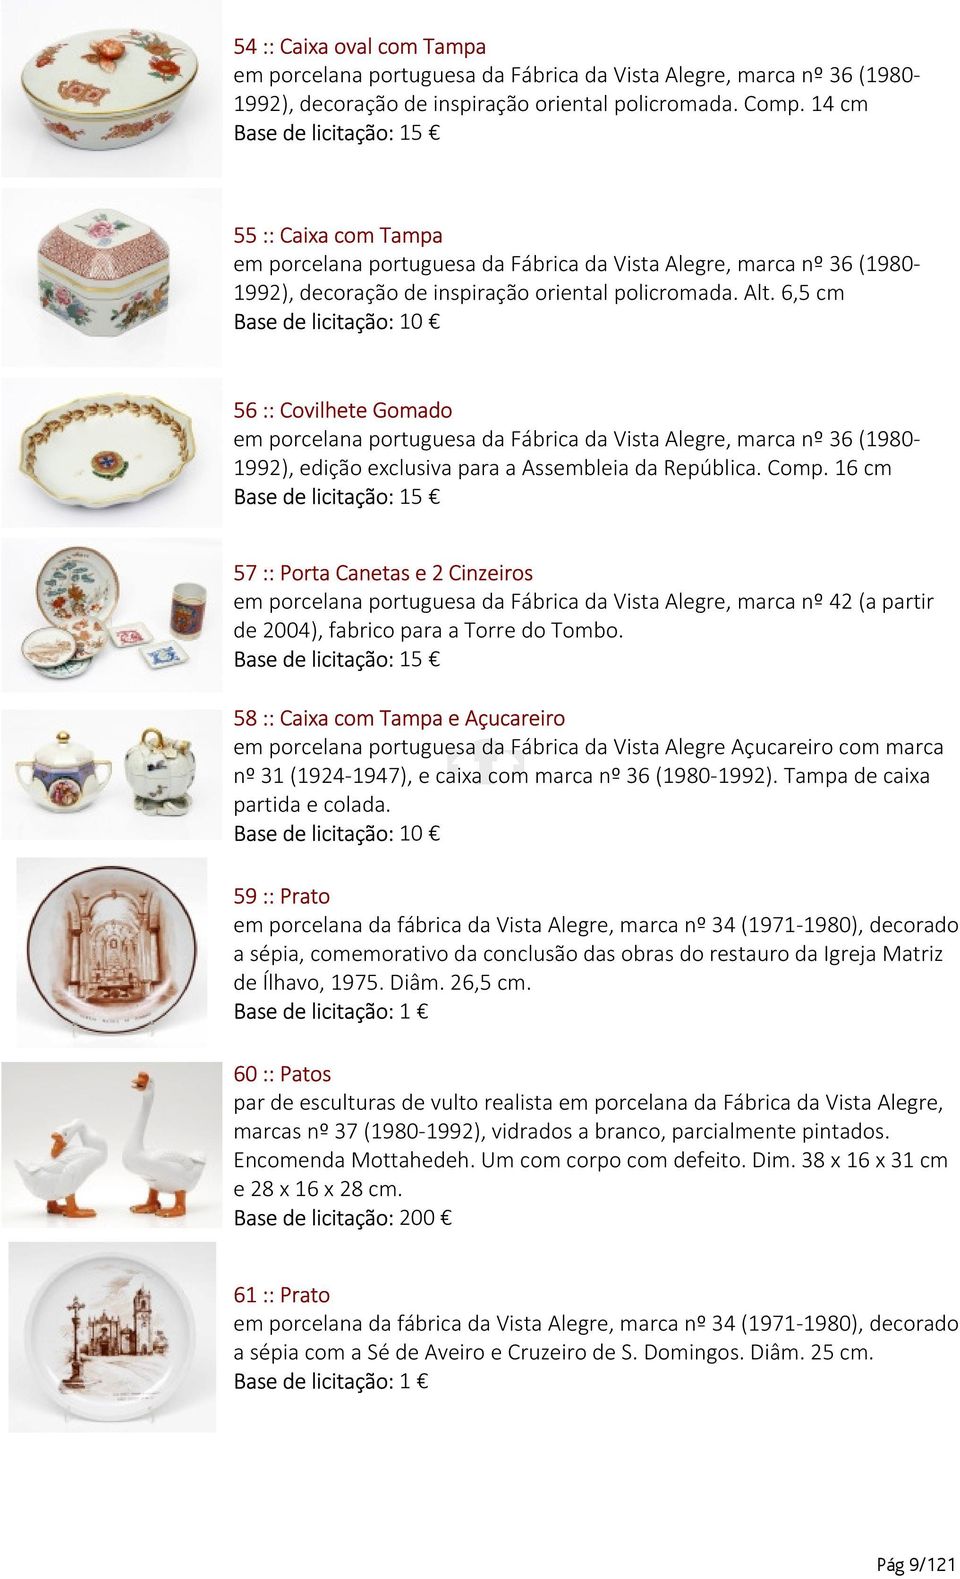 6,5 cm 56 :: Covilhete Gomado em porcelana portuguesa da Fábrica da Vista Alegre, marca nº 36 (1980-1992), edição exclusiva para a Assembleia da República. Comp.